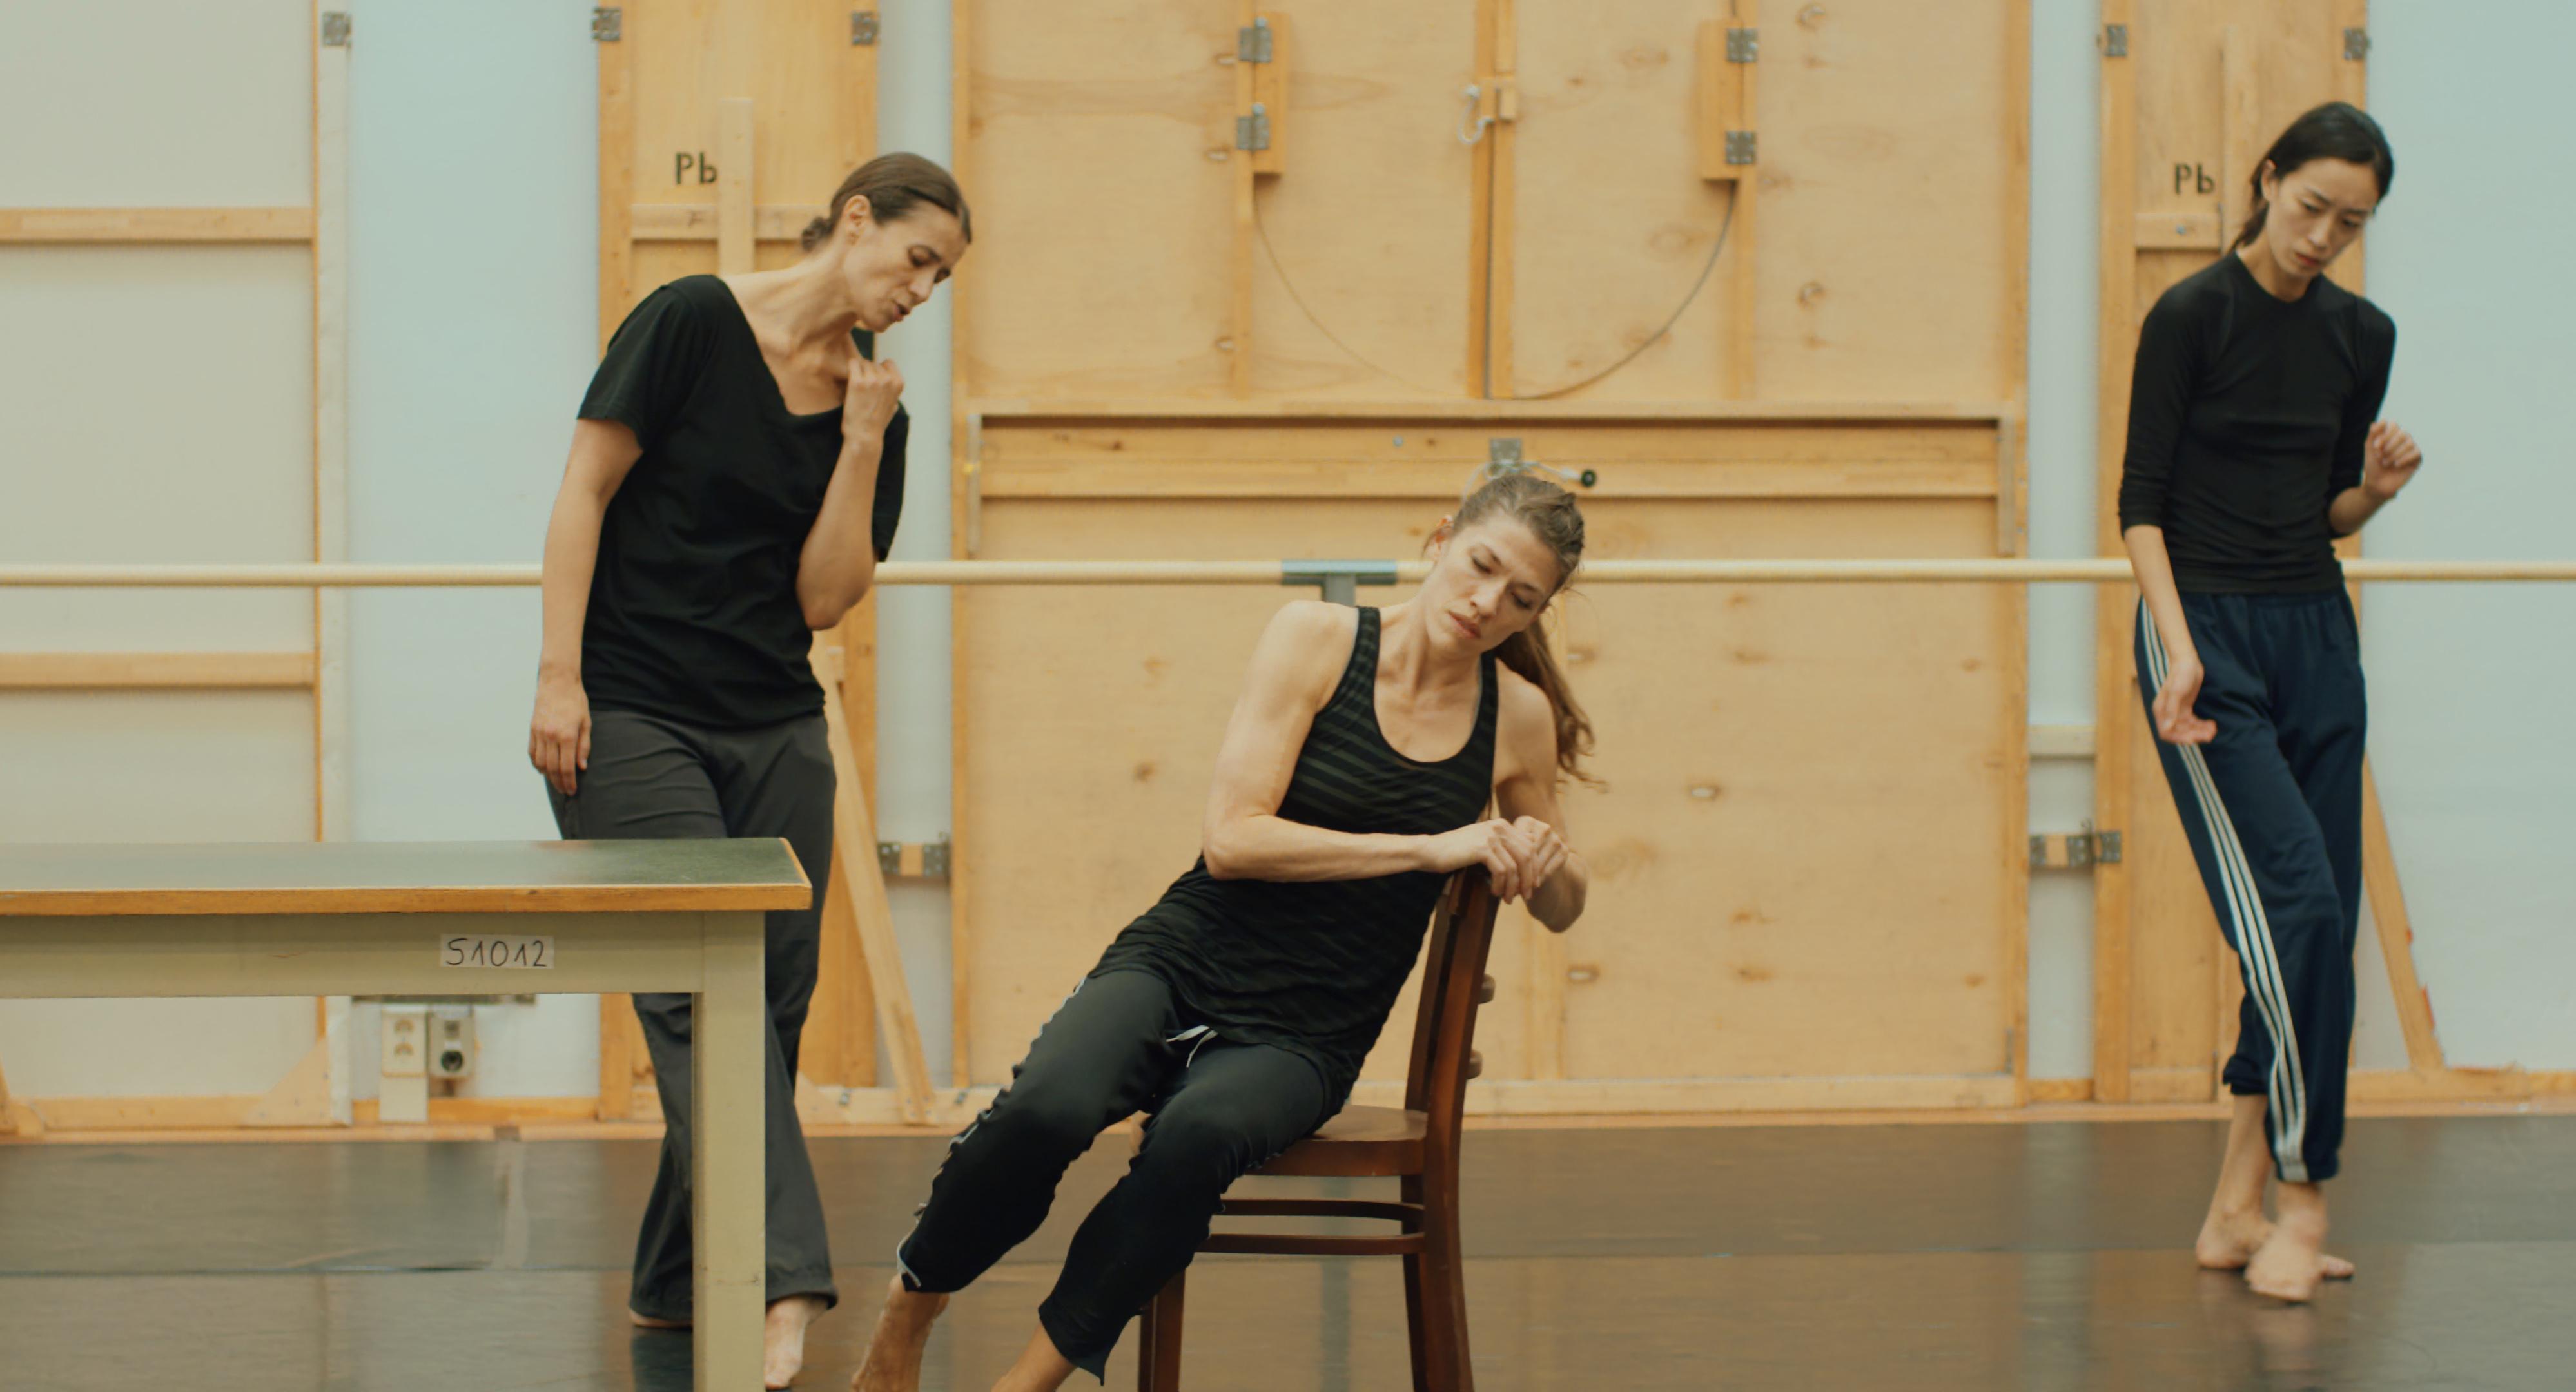 Danseuses en mouvement dans un studio de danse, deux debout et une assise.